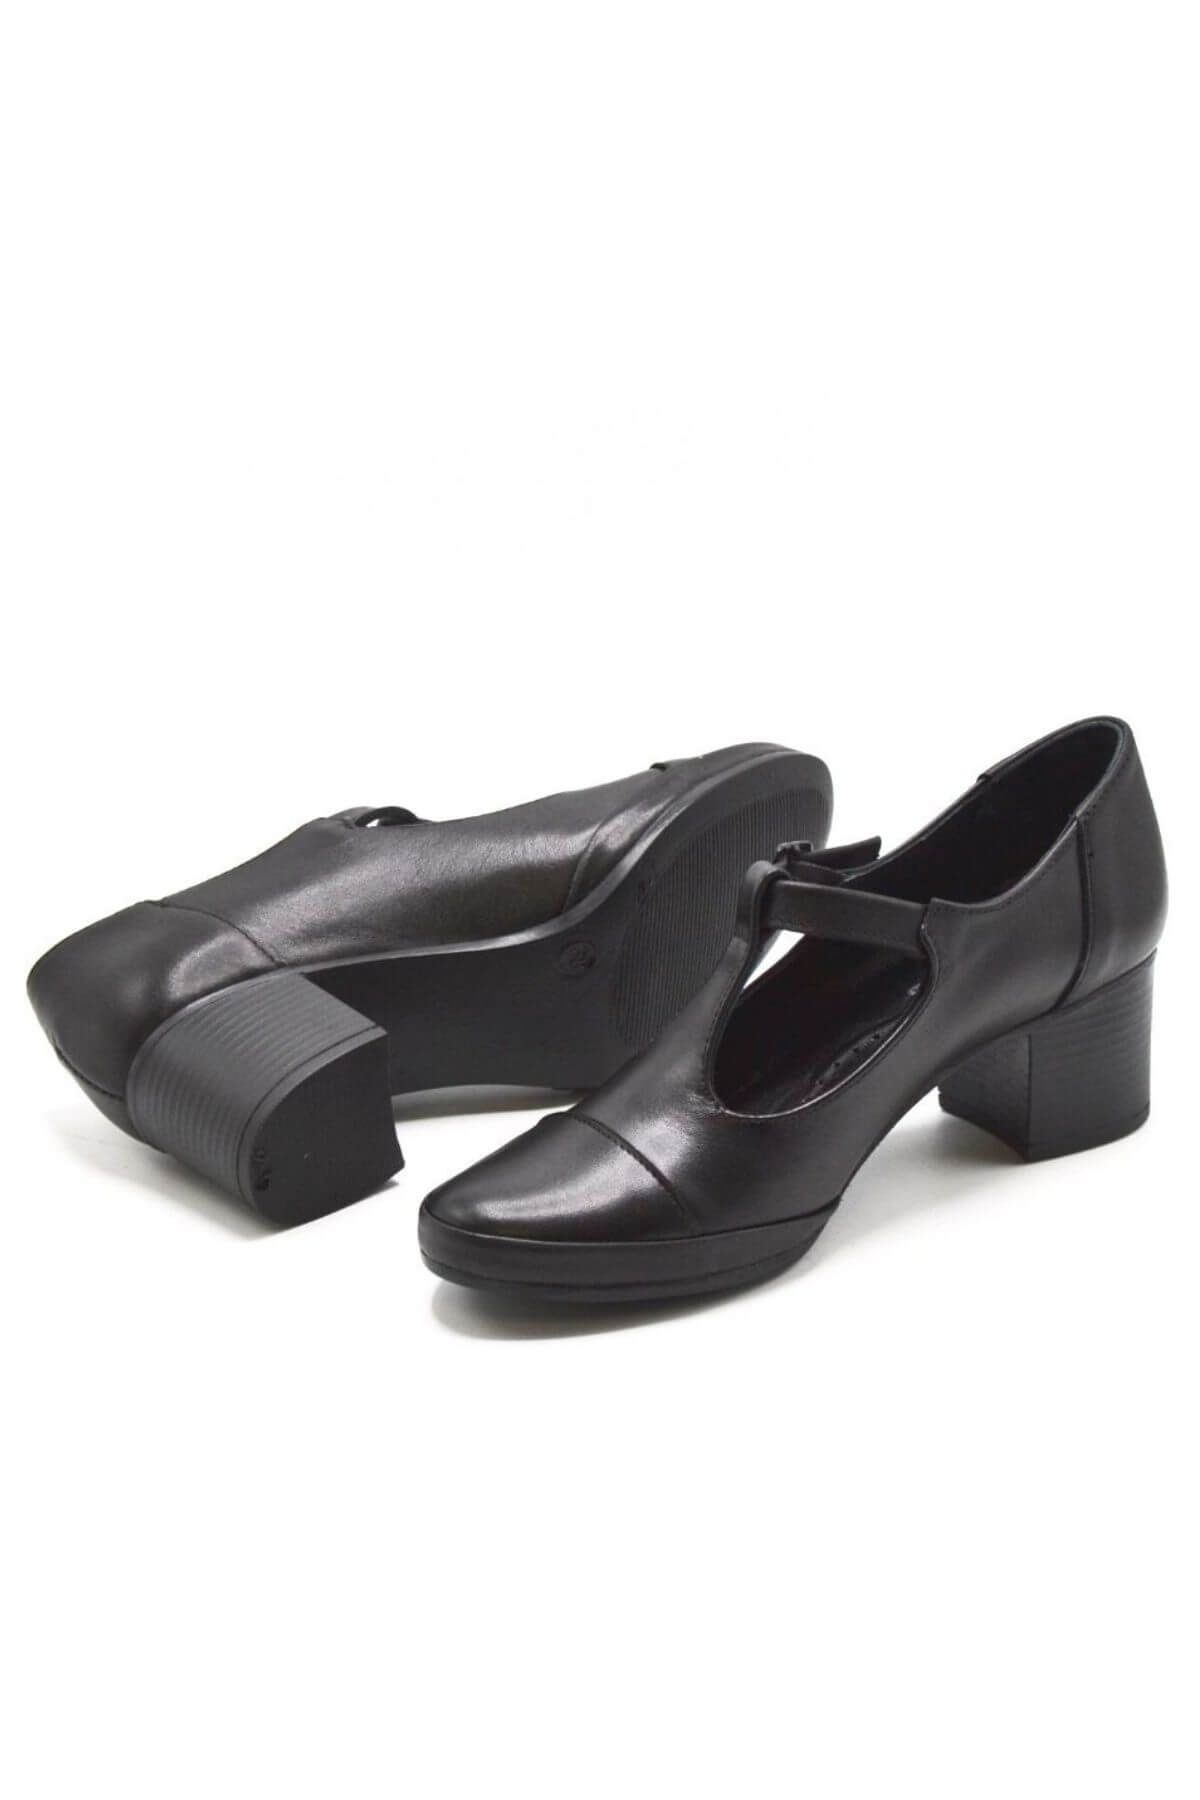 Kadın Topuklu Deri Ayakkabı Siyah 1911954K